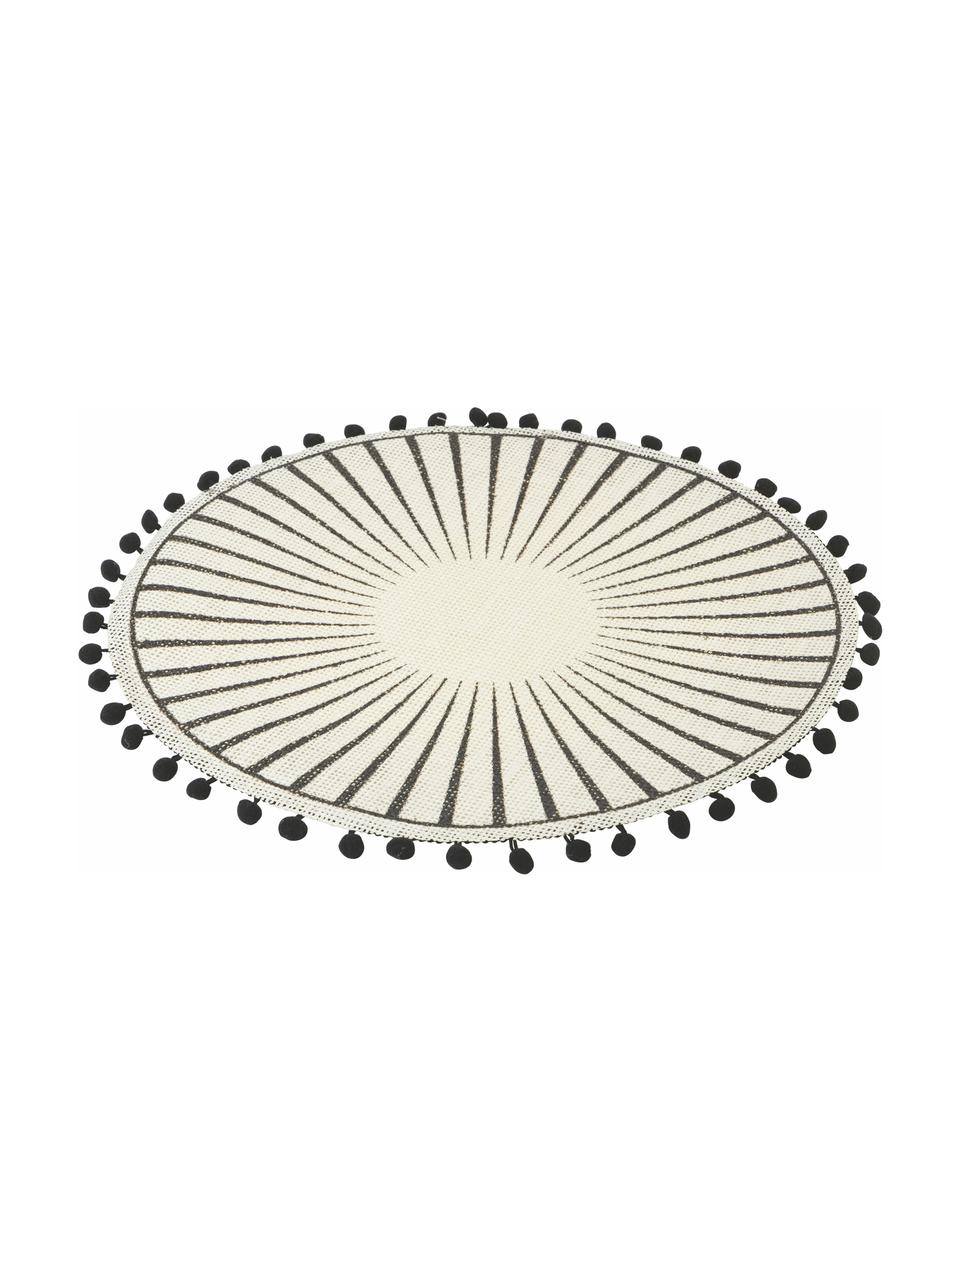 Tischsets Blackpon mit Bommeln, 6er Set, Jute, Weiß, Schwarz, Ø 38 cm